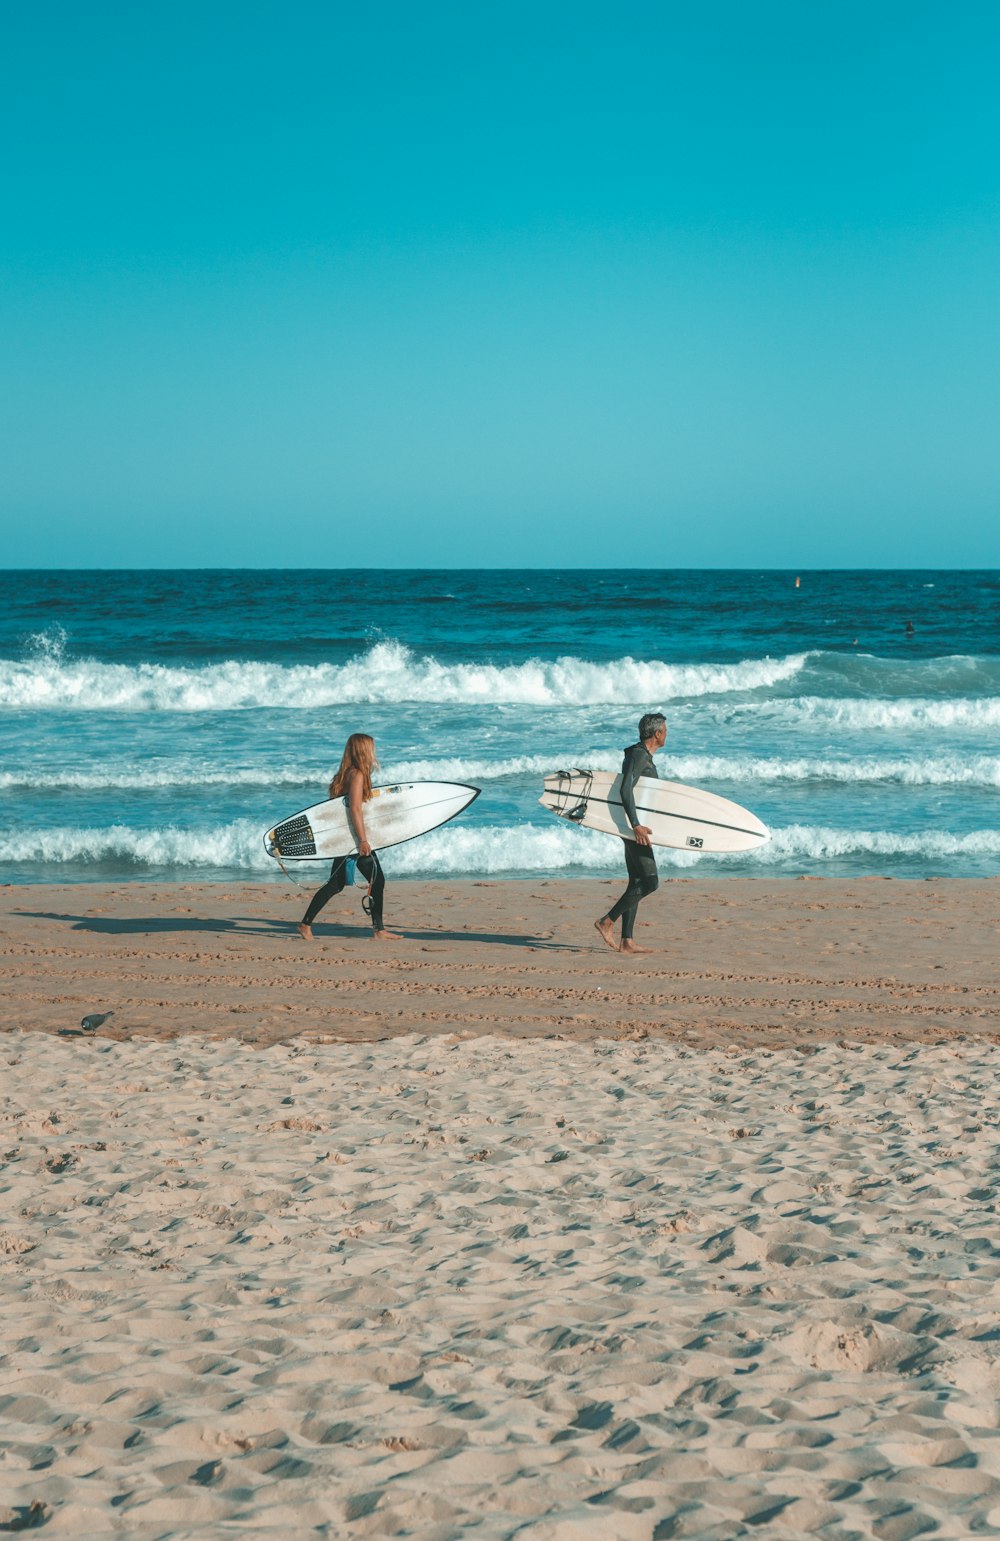 서핑 보드와 함께 해변을 걷는 두 사람